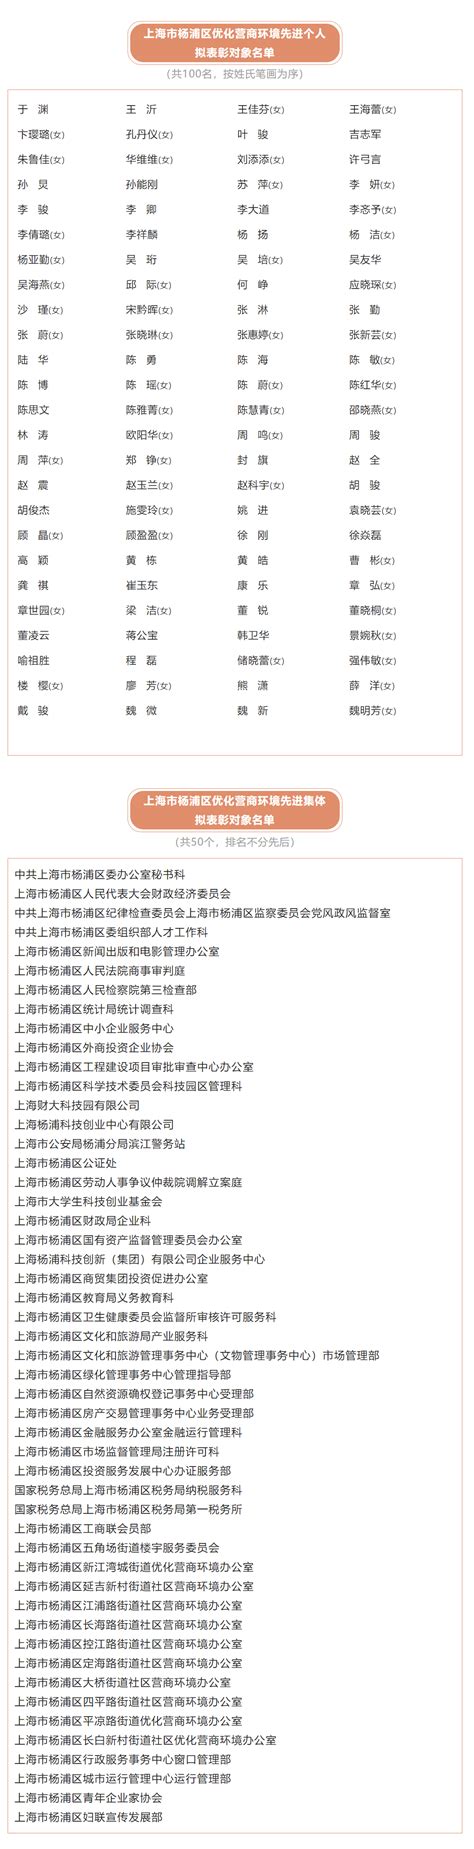 在杨浦区优化营商环境大会上，区长作出三项承诺并发布热线电话